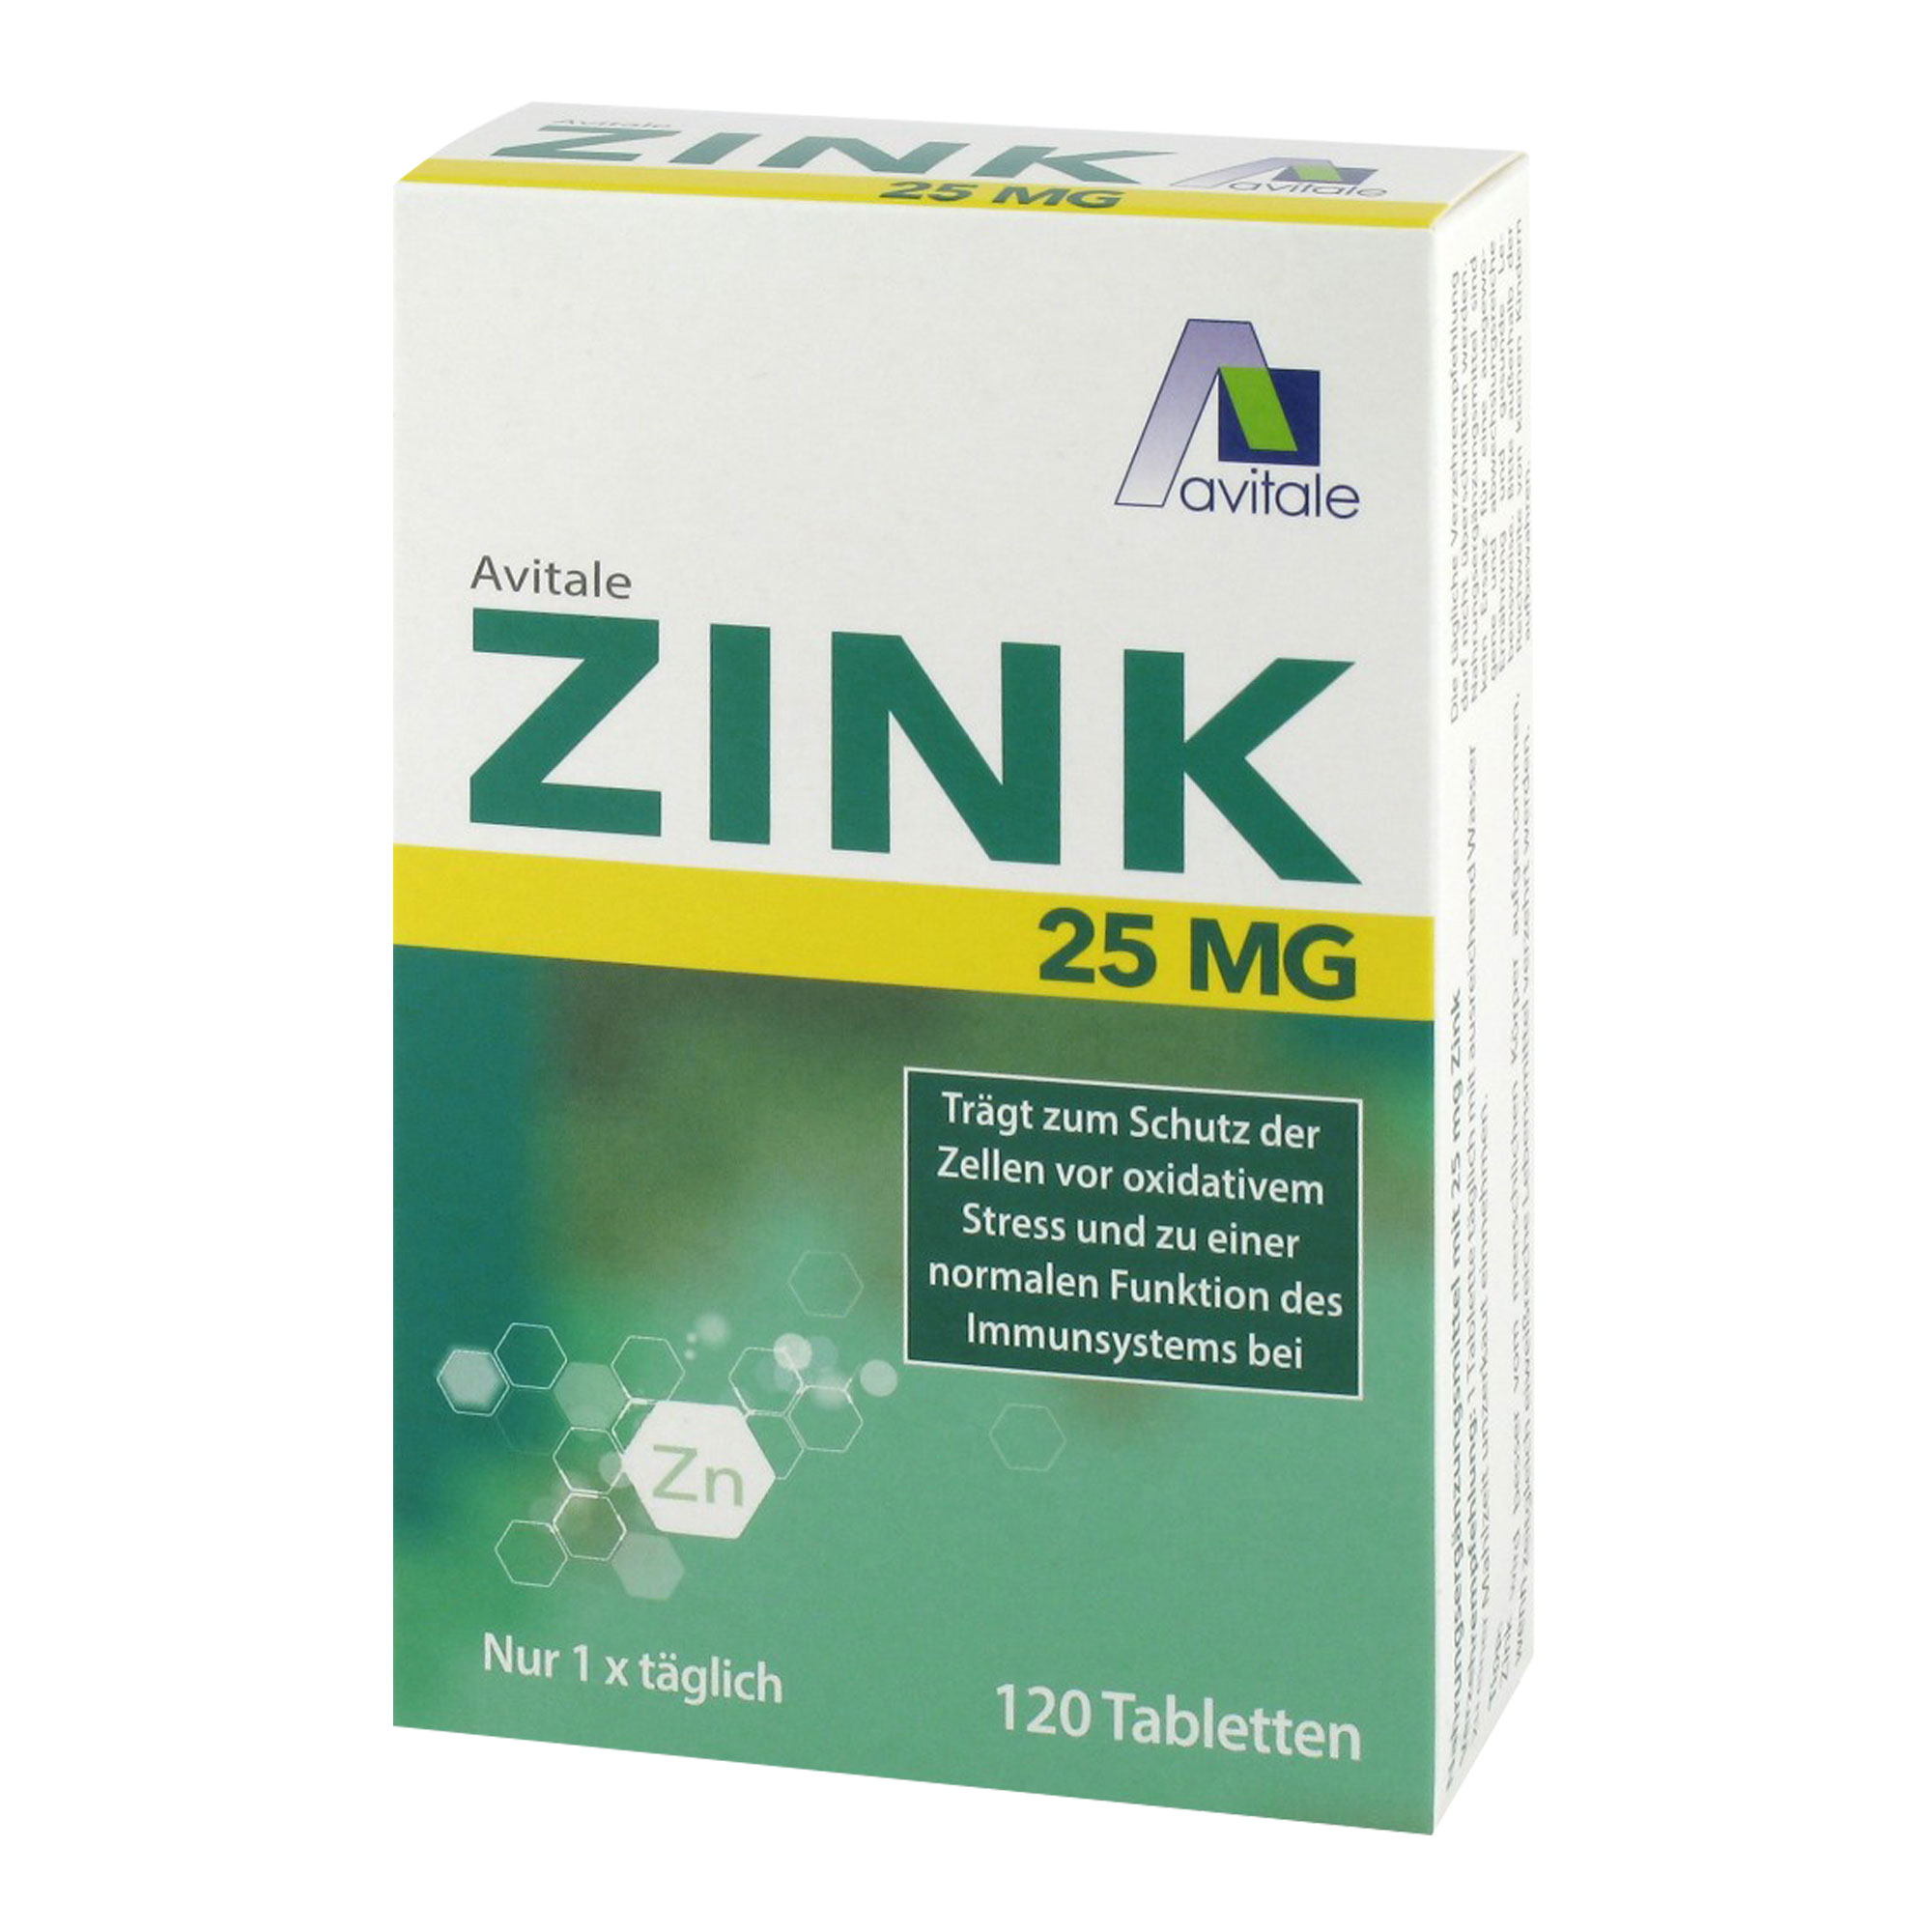 Nahrungsergänzungsmittel mit 25 mg elementarem Zink in der gut bioverfügbaren, organischen Citratform.